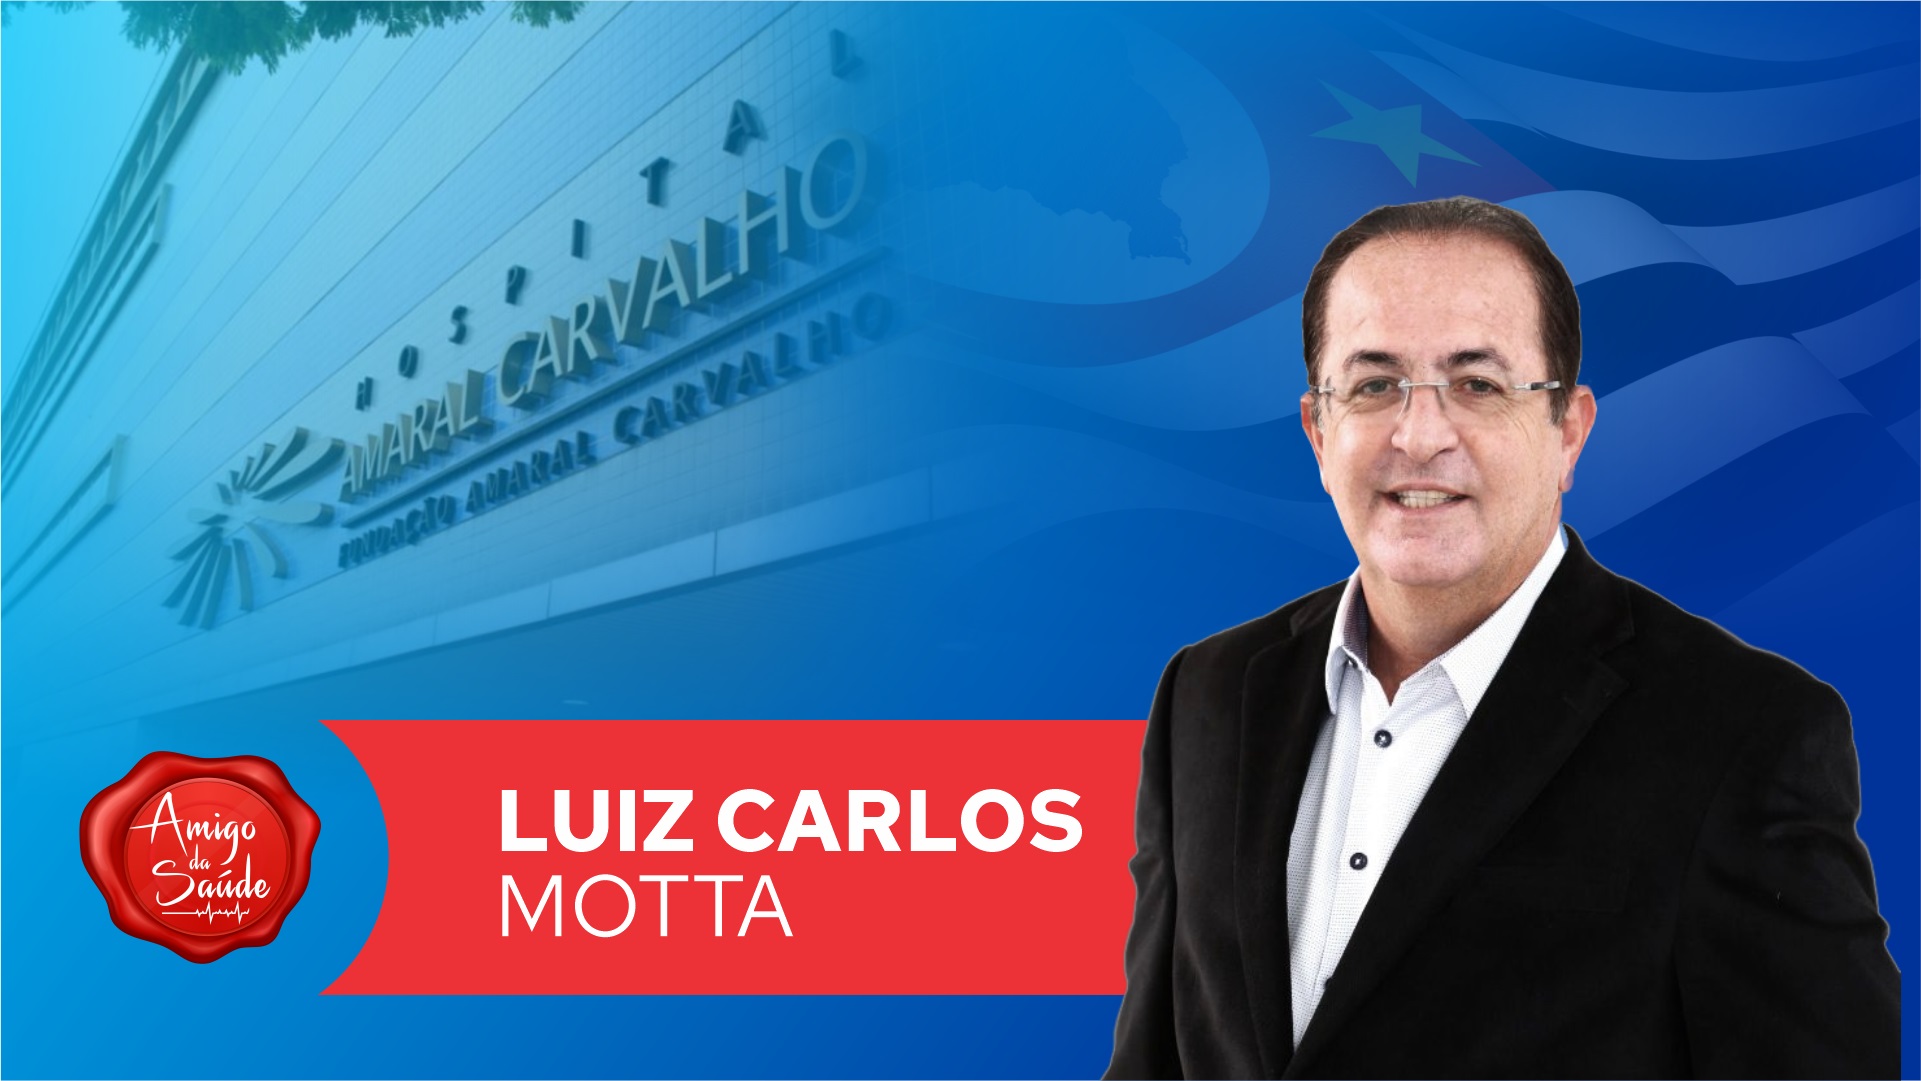 deputado-luiz-carlo-motta-apoia-o-hospital-amaral-carvalho - Acao Comunicativa